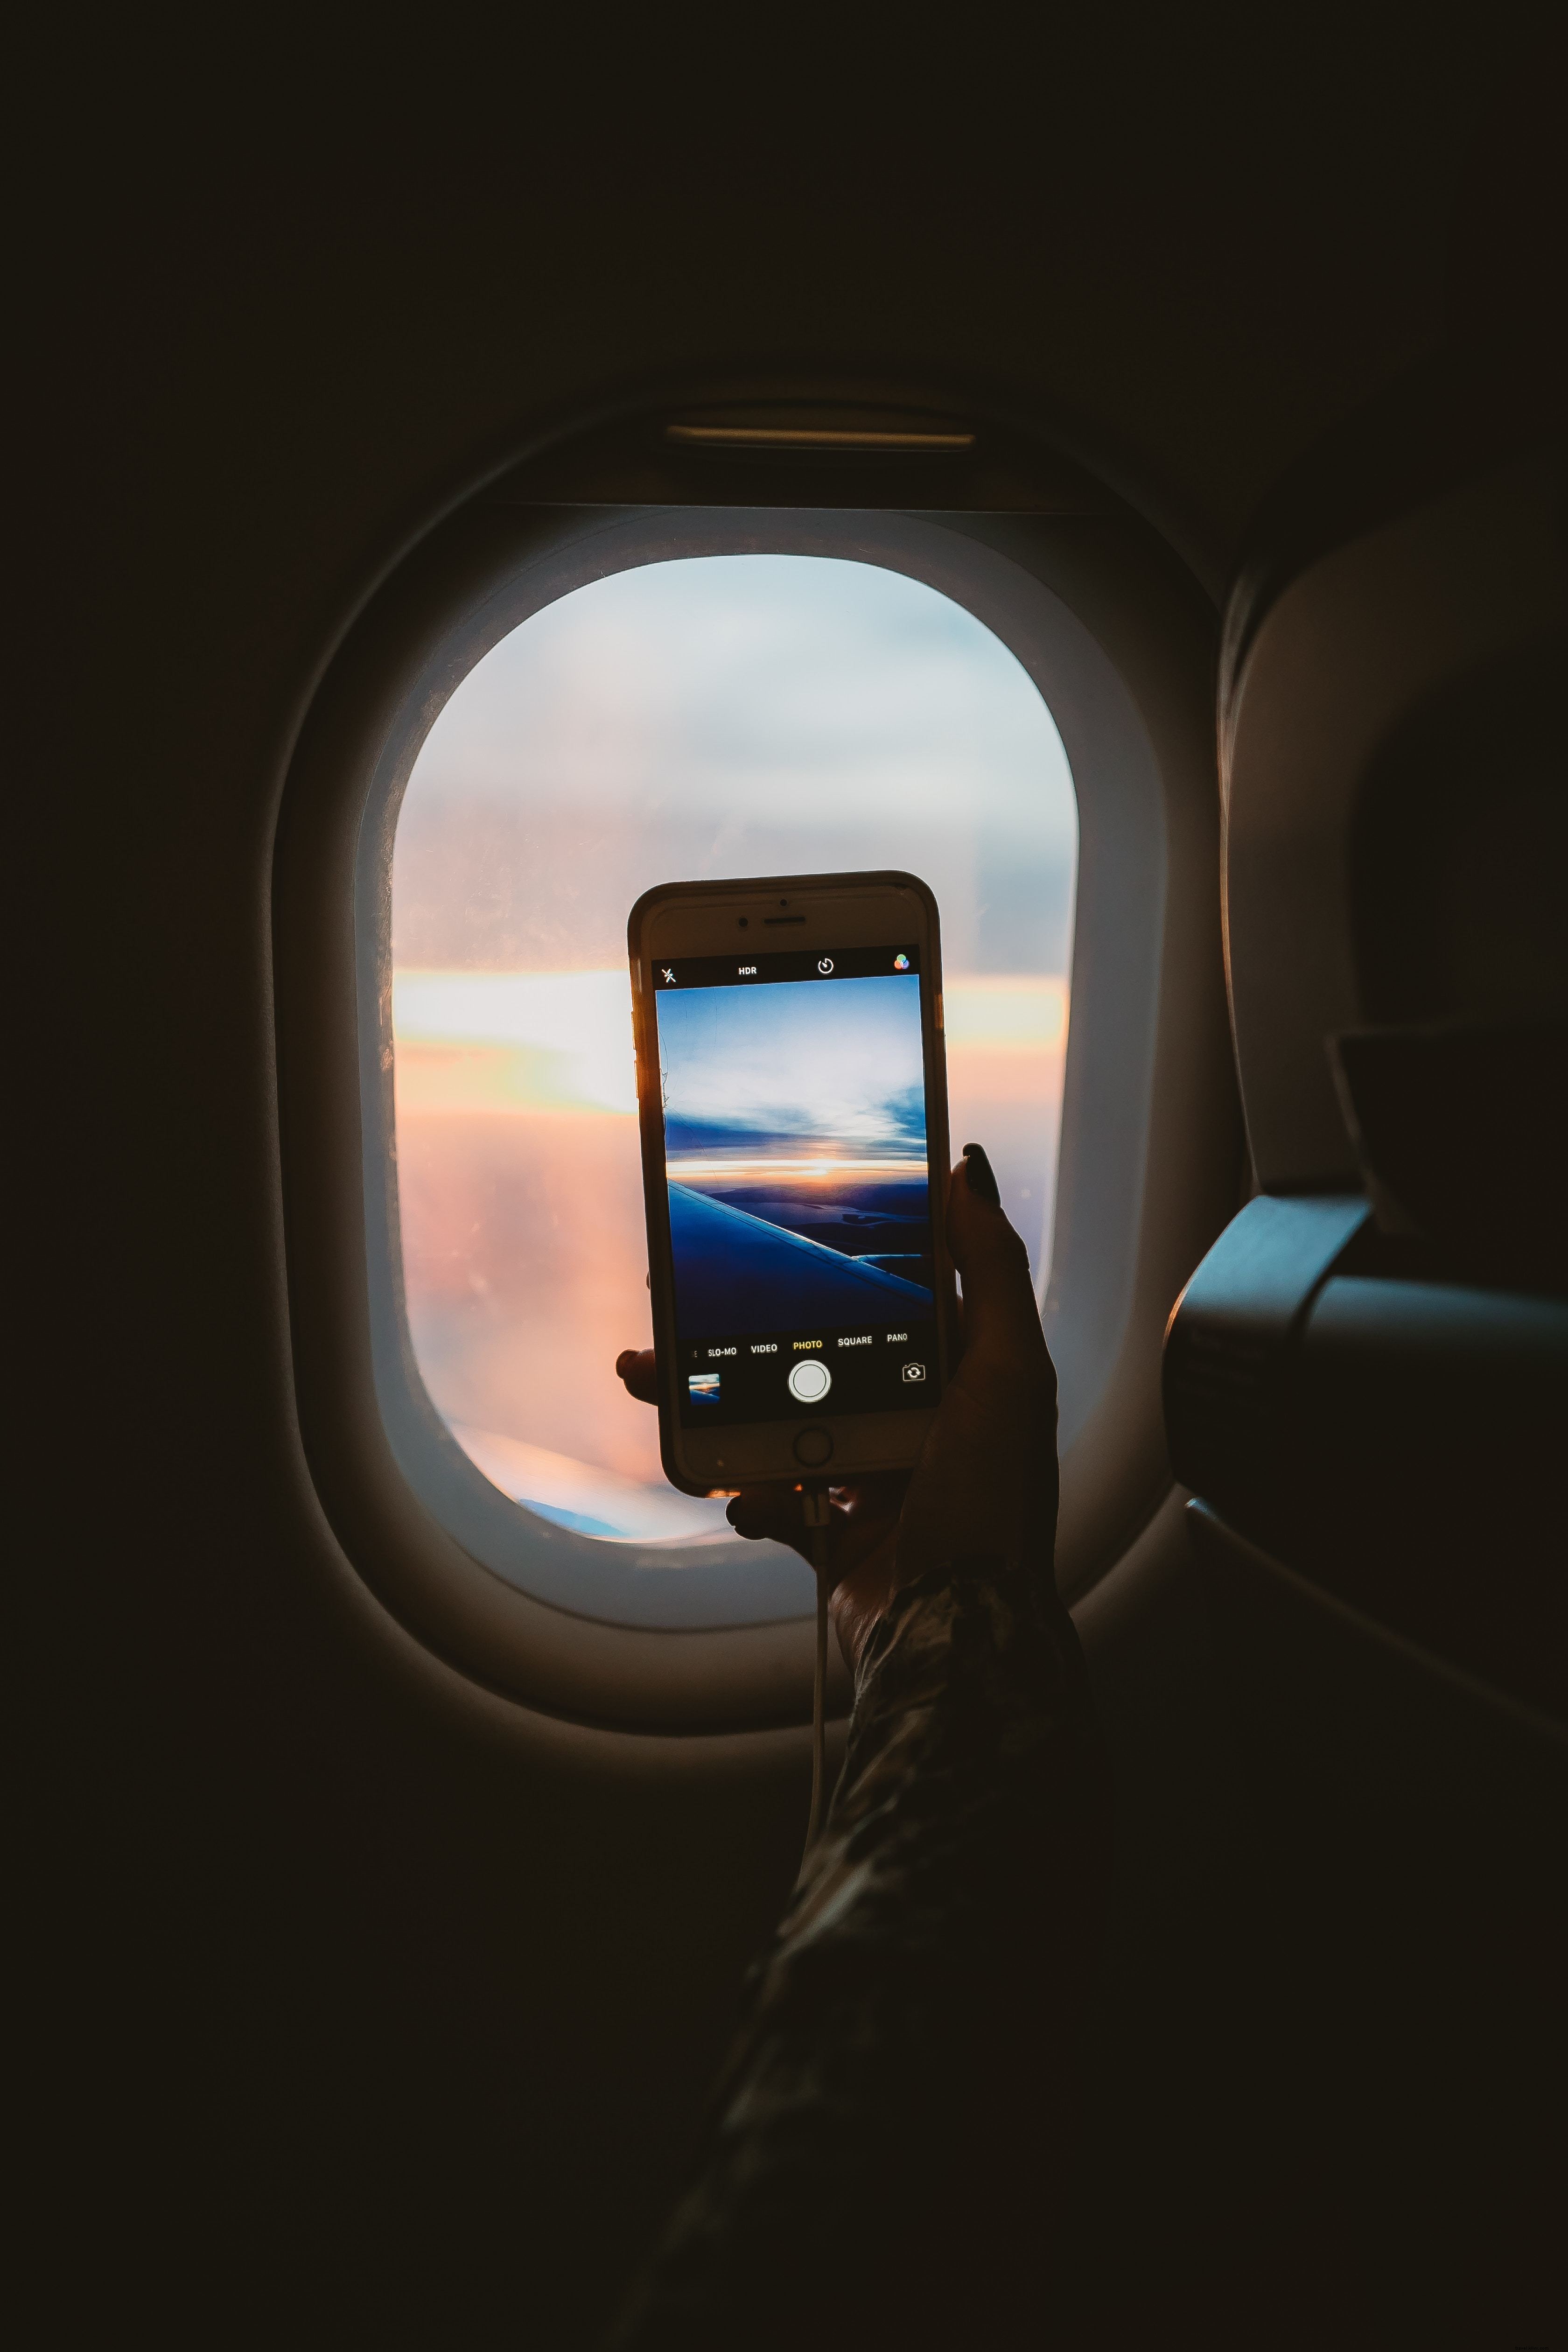 Tirando uma foto através da foto da janela do avião